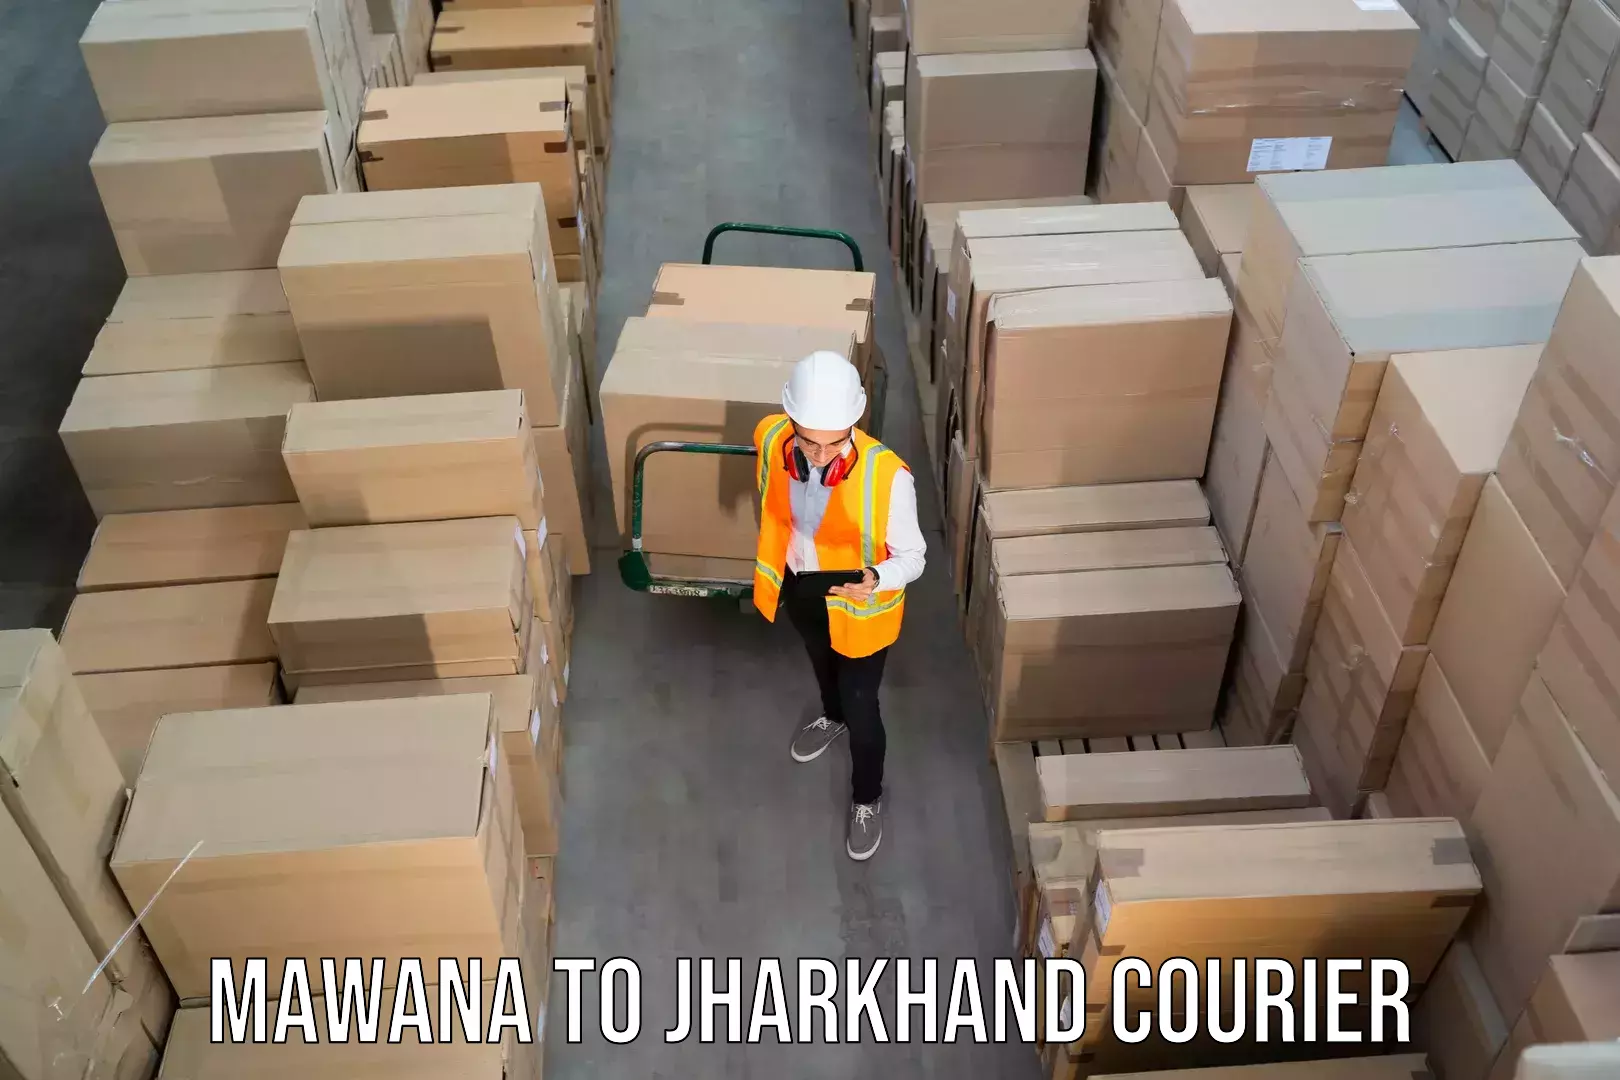 Courier service partnerships in Mawana to Sahibganj